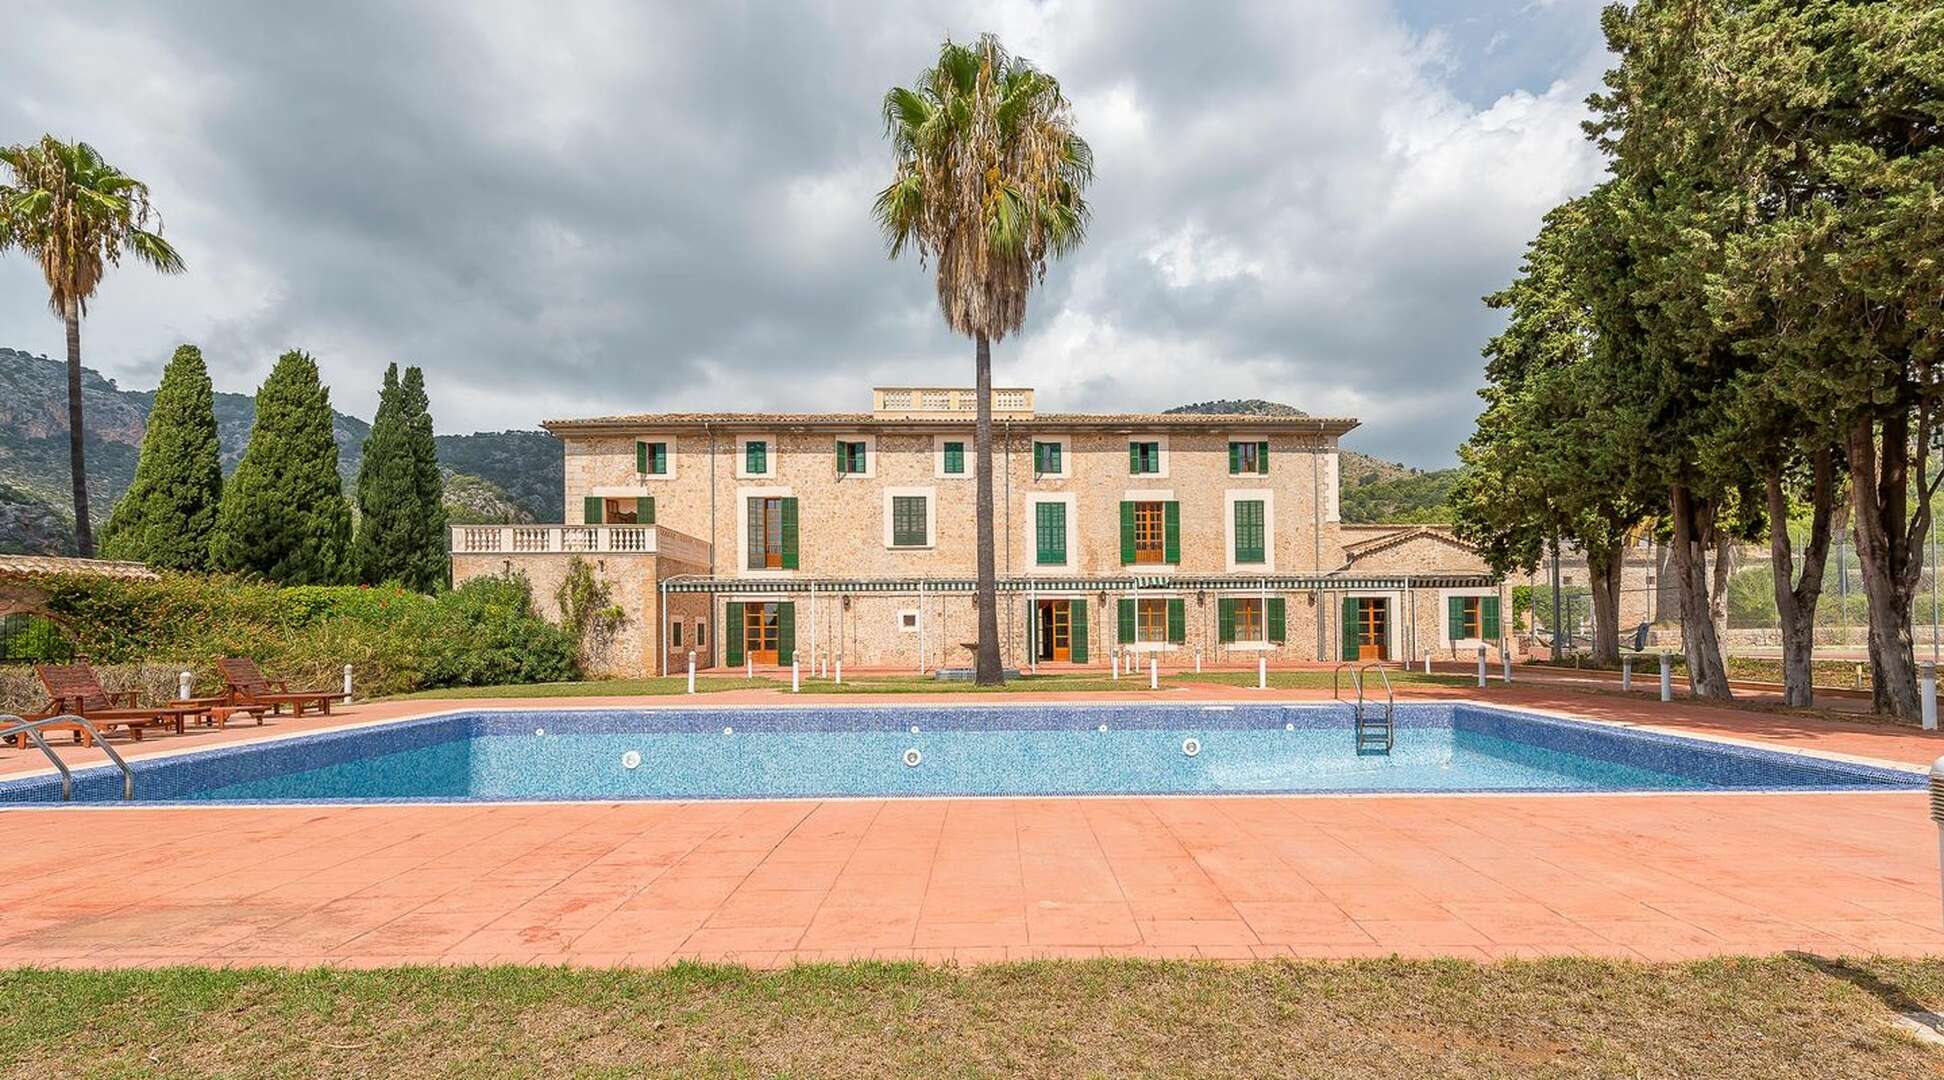 Casa señorial con 84 habitaciones, piscina y parque cerca de Valldemossa